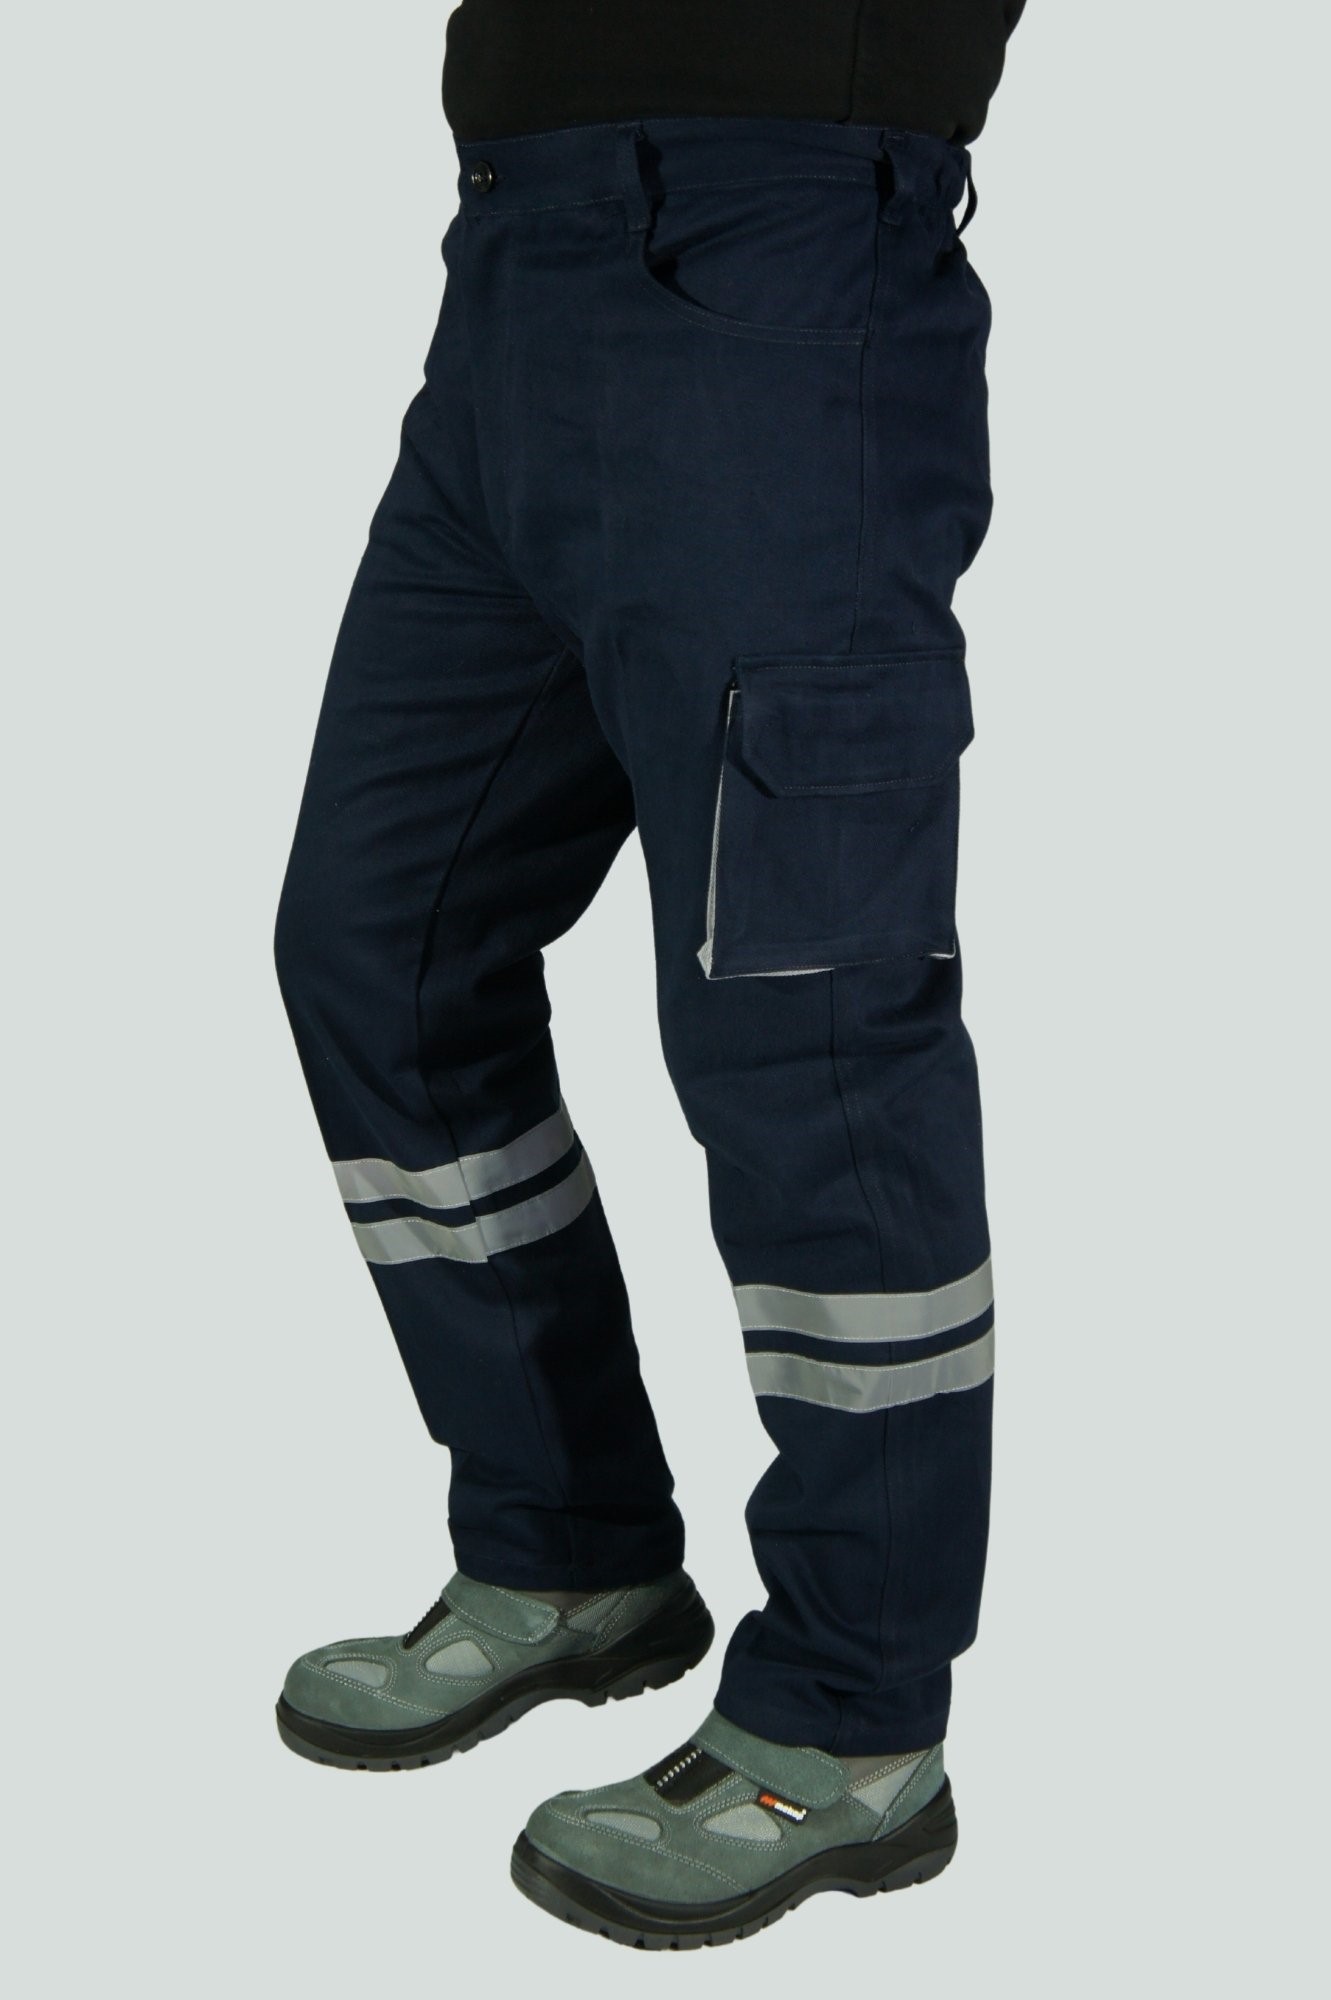 Uniprom İş Pantolonu Kışlık Klasik Model 7-7 Kumaş Lacivert